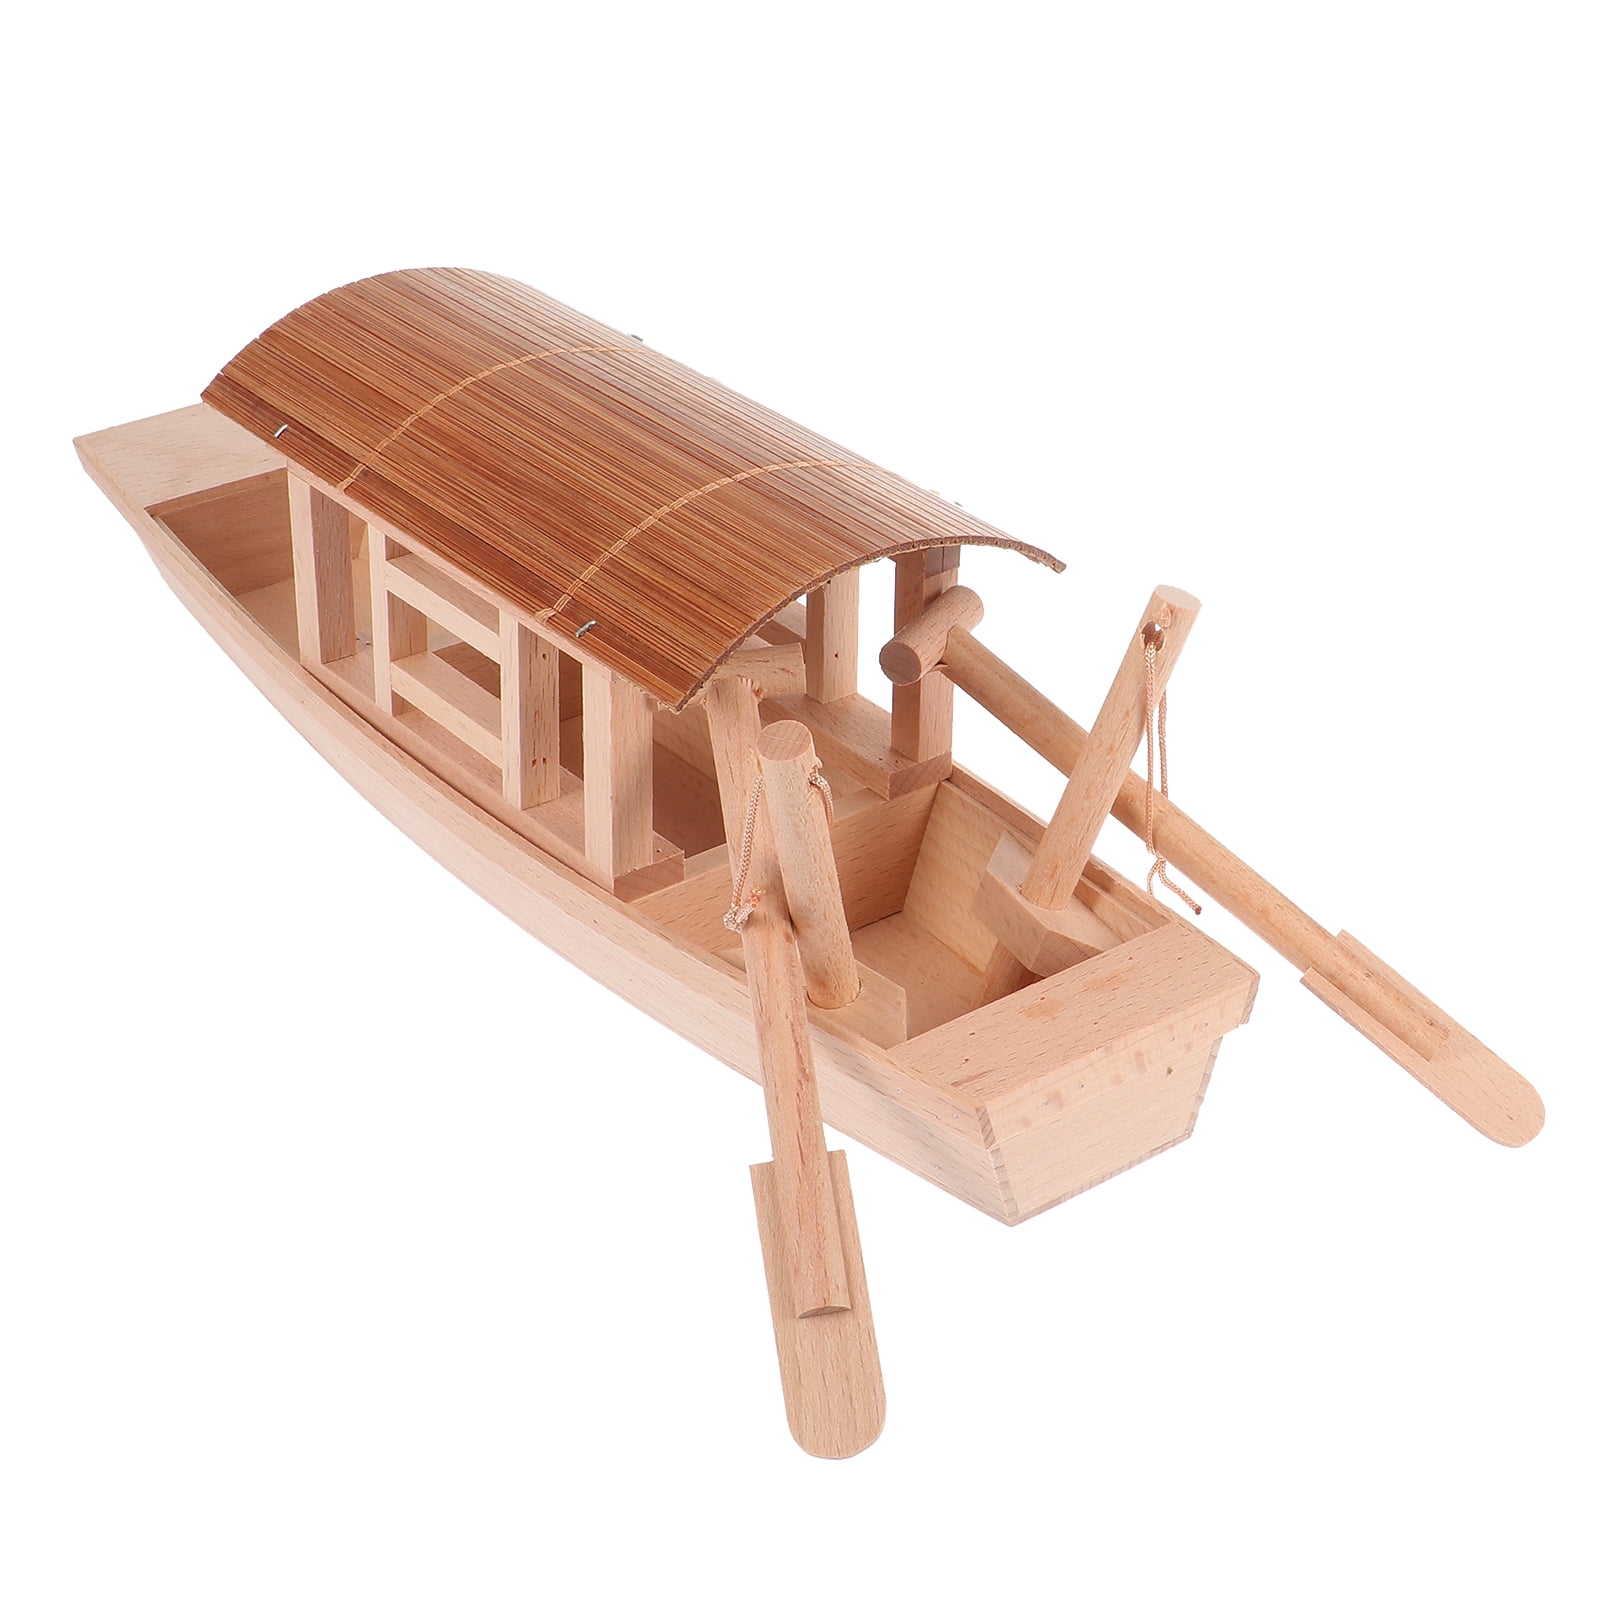 Buy Wooden Fine Catch Model Fishing Boat 6in - Model Ships